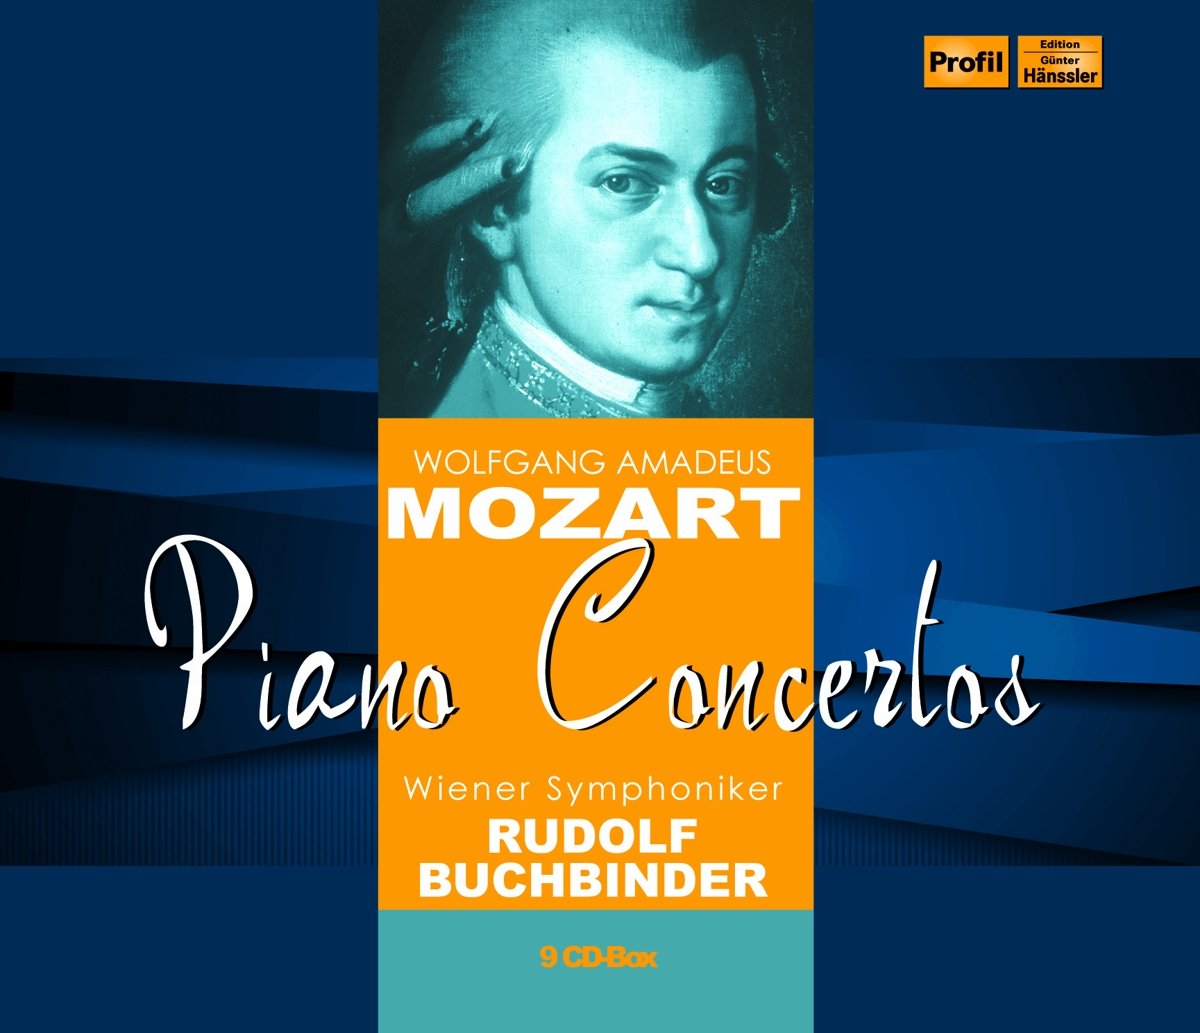 Audio Cd Wolfgang Amadeus Mozart - Piano Concertos (9 Cd) NUOVO SIGILLATO, EDIZIONE DEL 29/09/2014 SUBITO DISPONIBILE